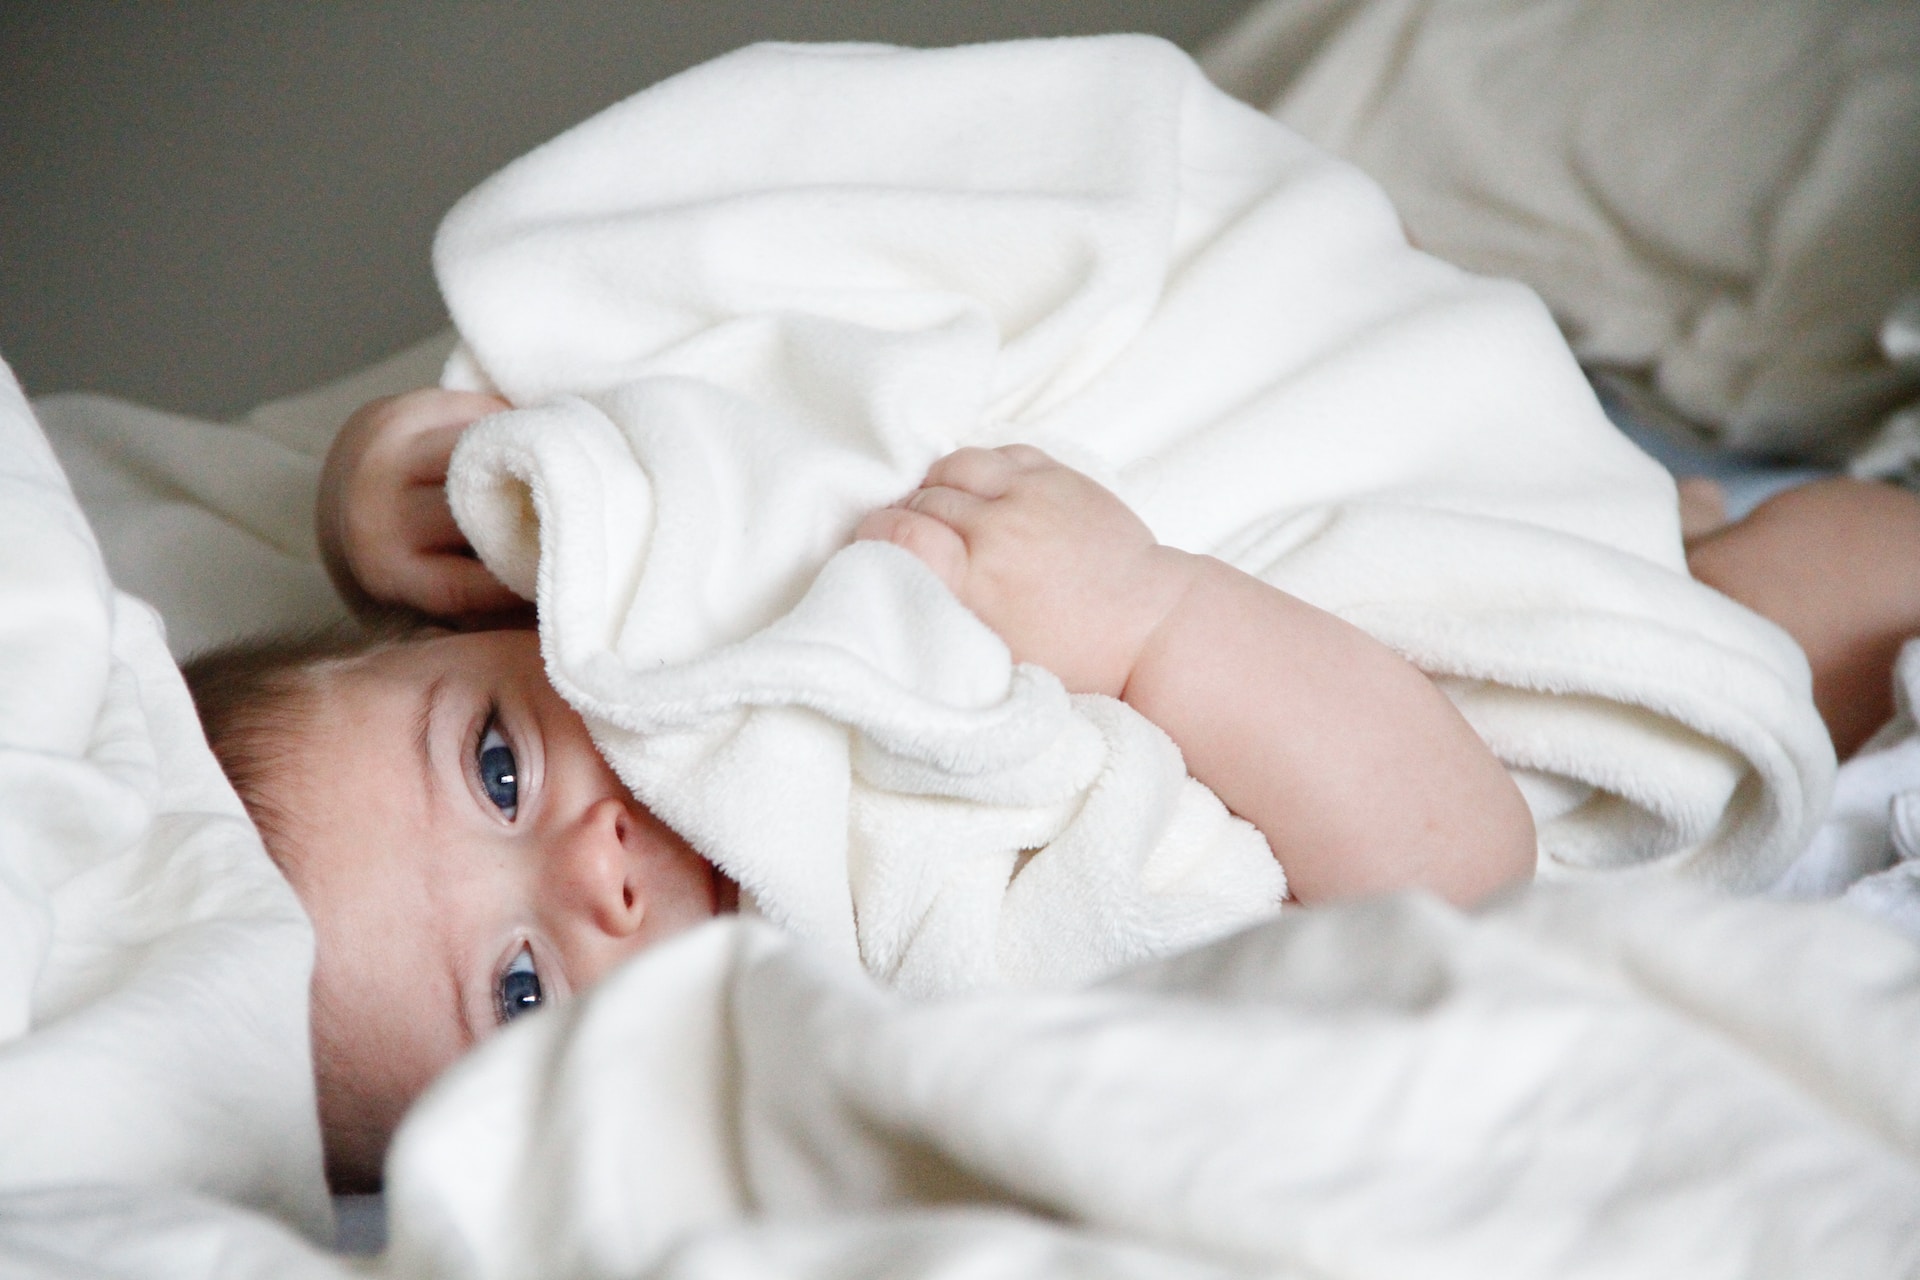 En nyfødt baby gemmer sig under et hyggeligt tæppe i en seng, mens dets nybagte musikforældre (nybagte musikforældre) deltager i spændende workshops.